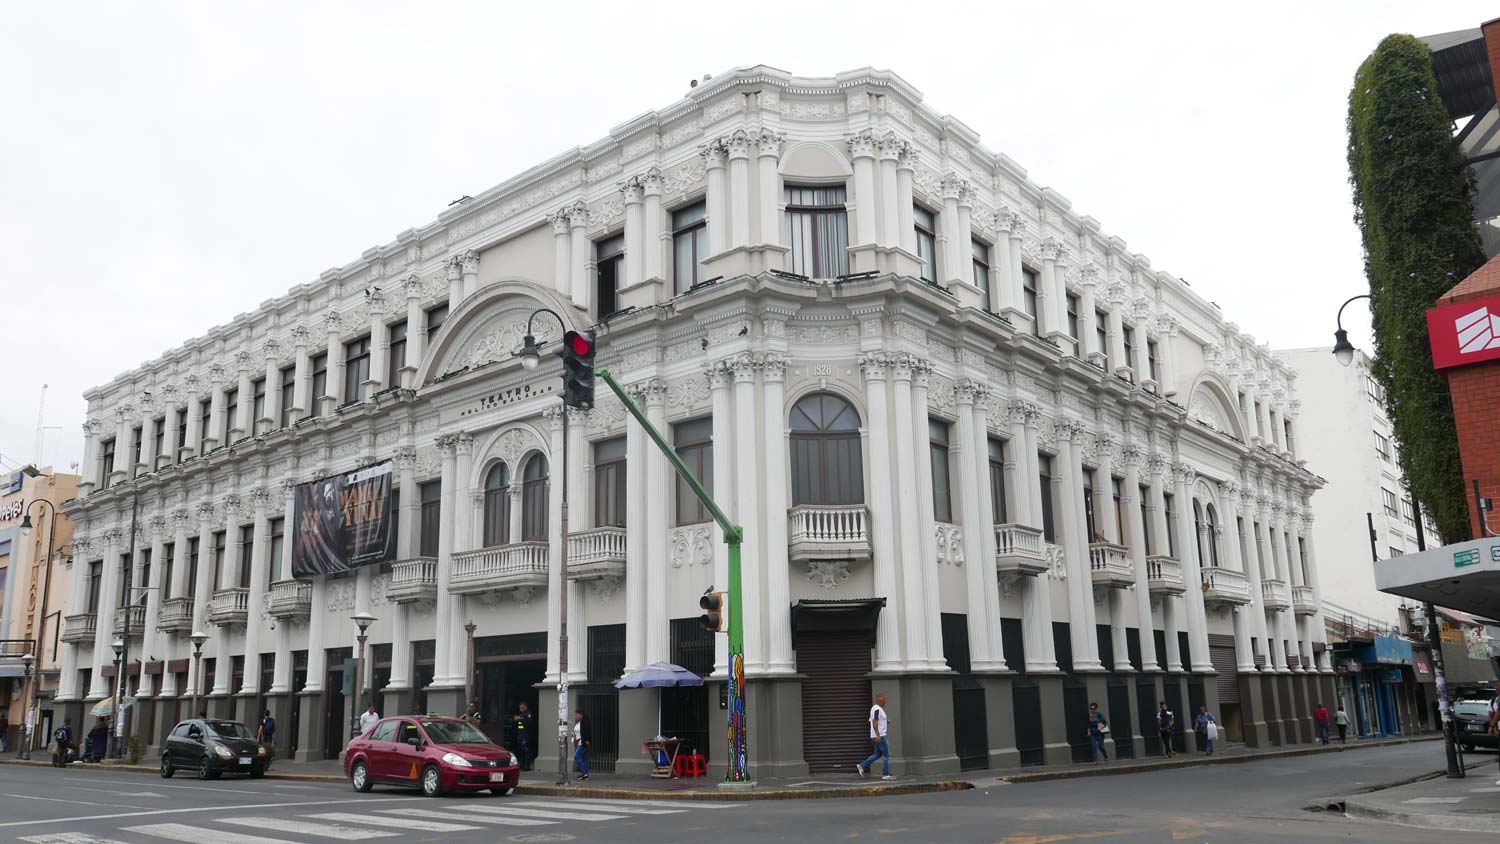 Melico Salazar theatre in San Jose, Costa Rica